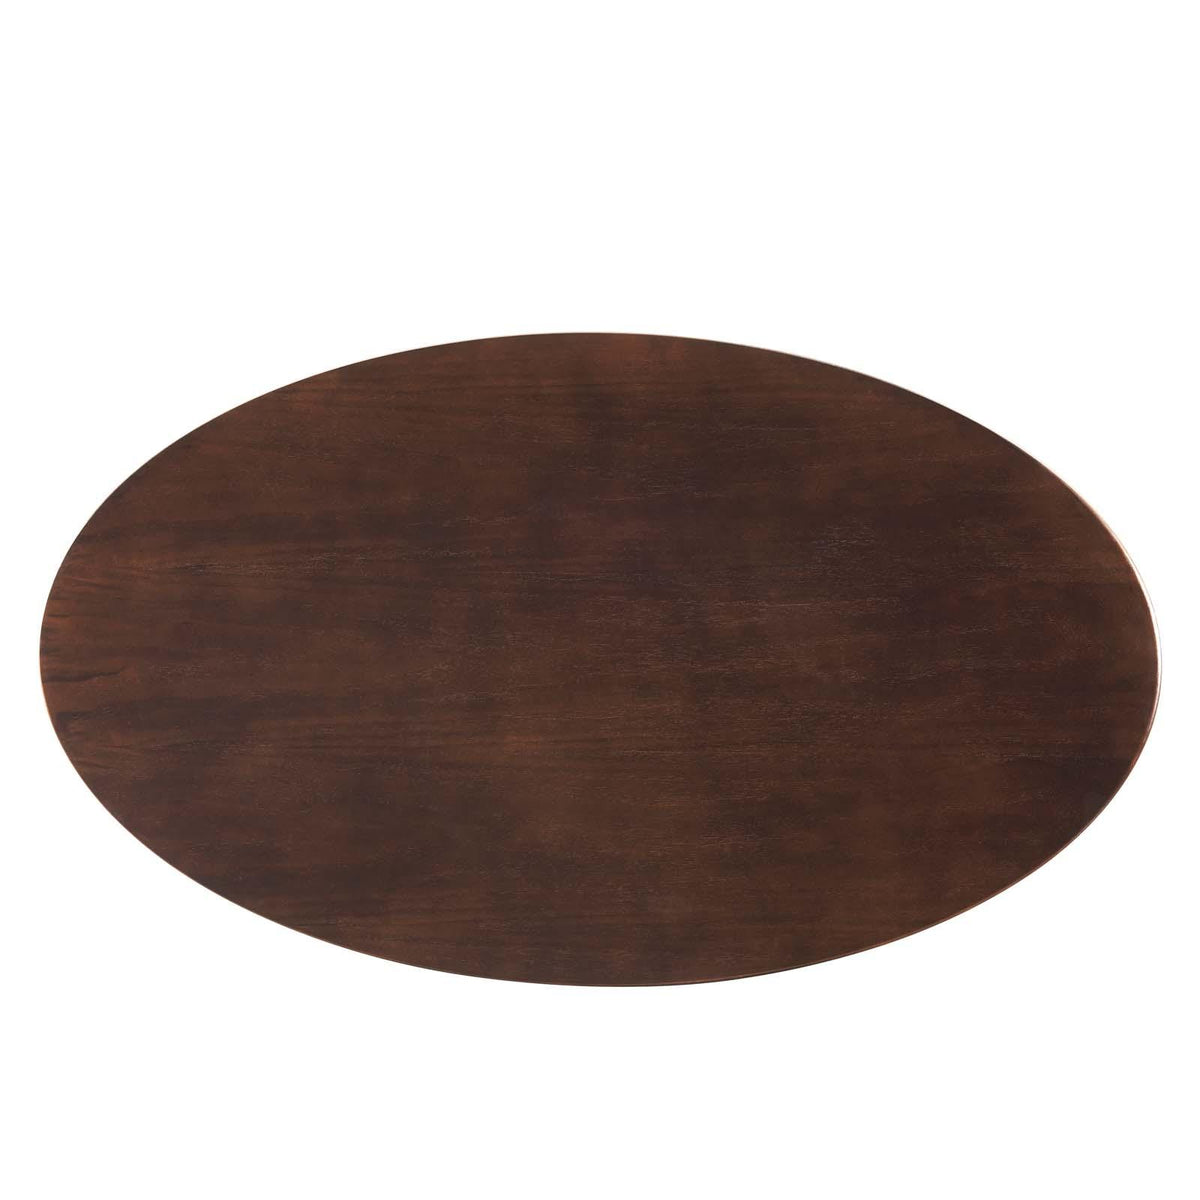 Modway Furniture Modern Lippa 48" Oval Wood Coffee Table - EEI-5519